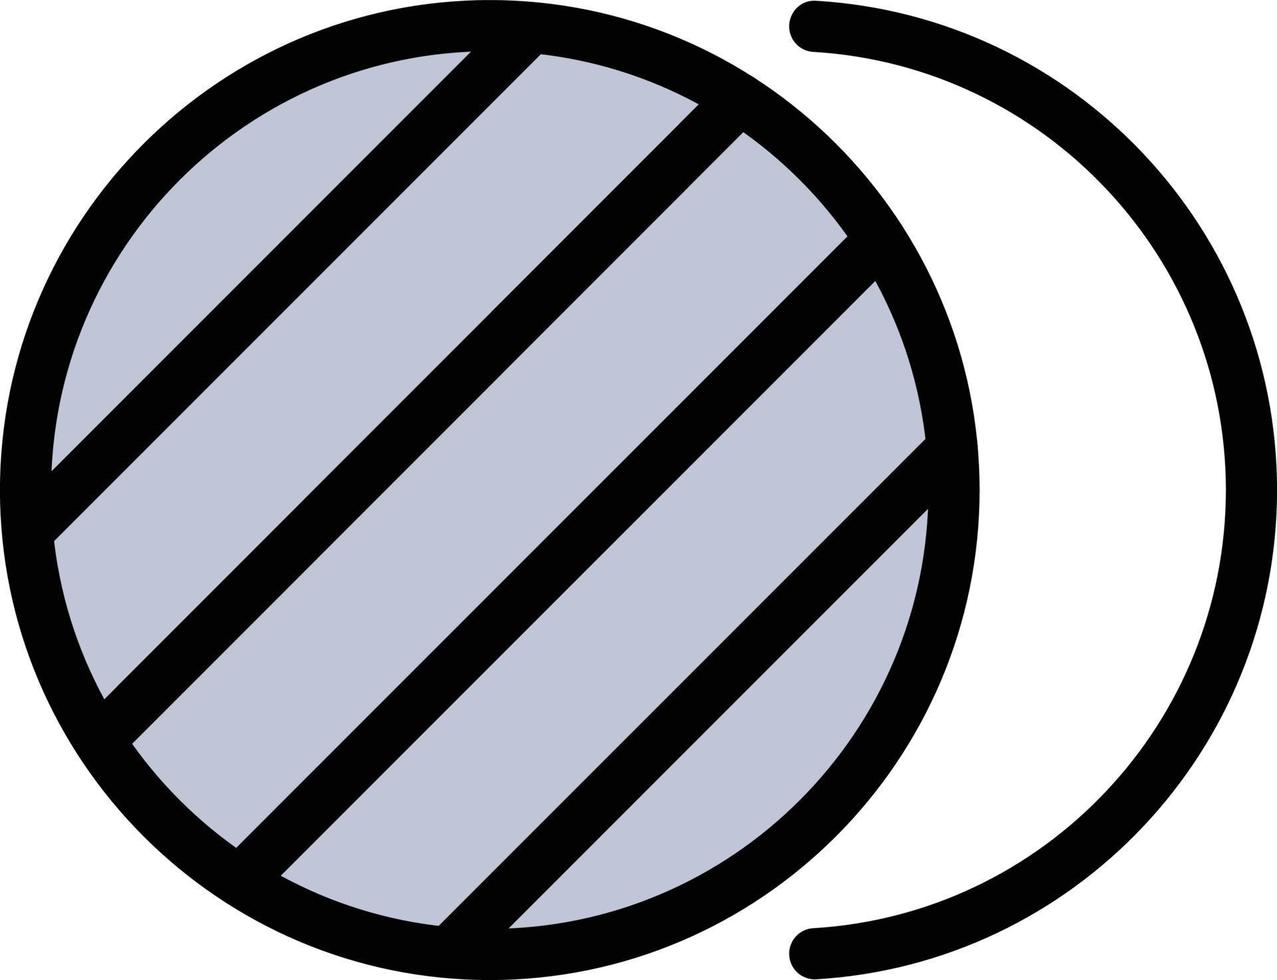 eclipse vektor illustration på en bakgrund. premium kvalitet symbols.vector ikoner för koncept och grafisk design.